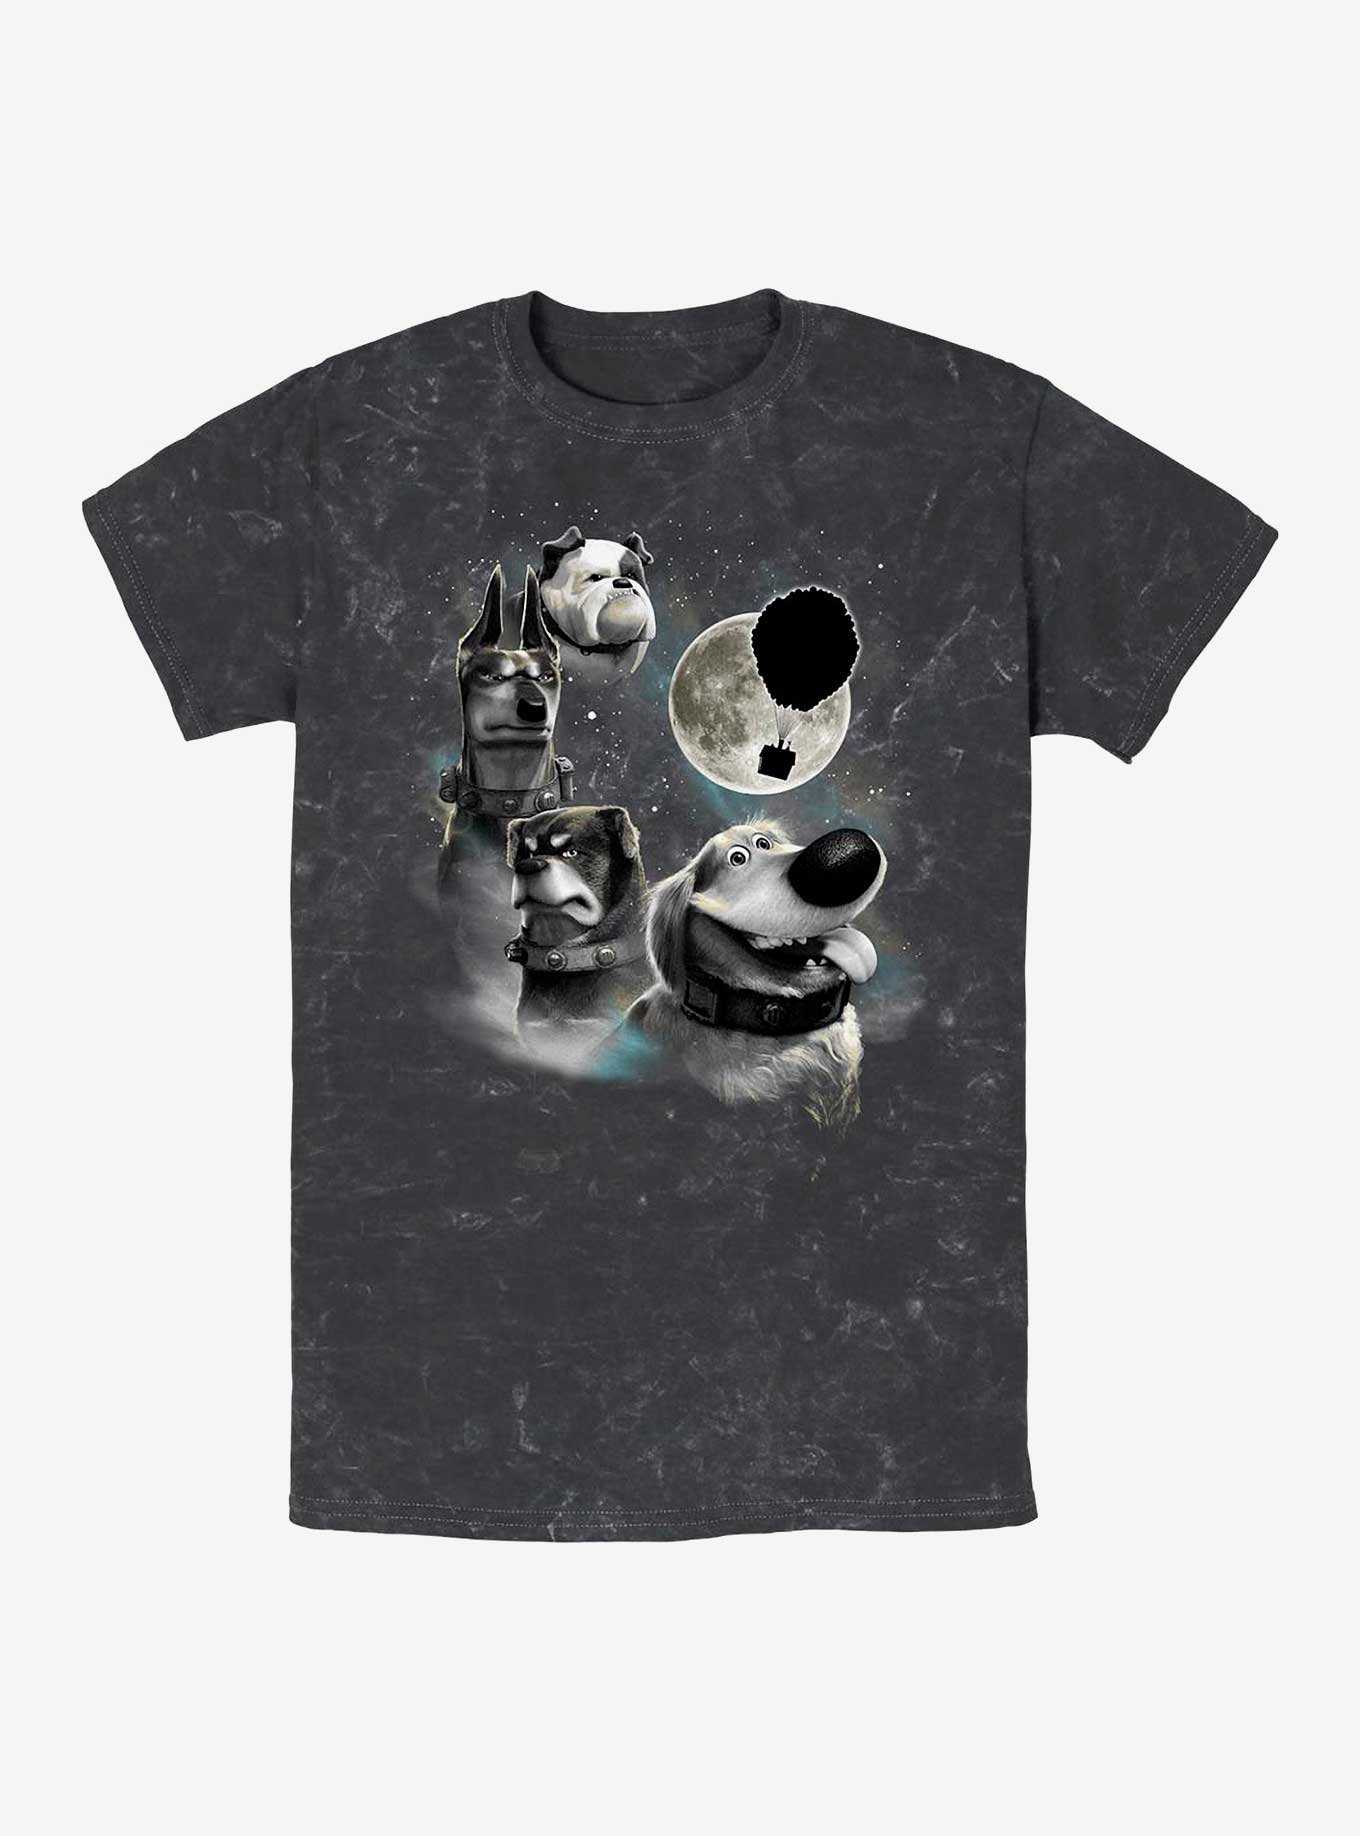 Disney Pixar Up Dug Moon Mineral Wash T-Shirt, , hi-res